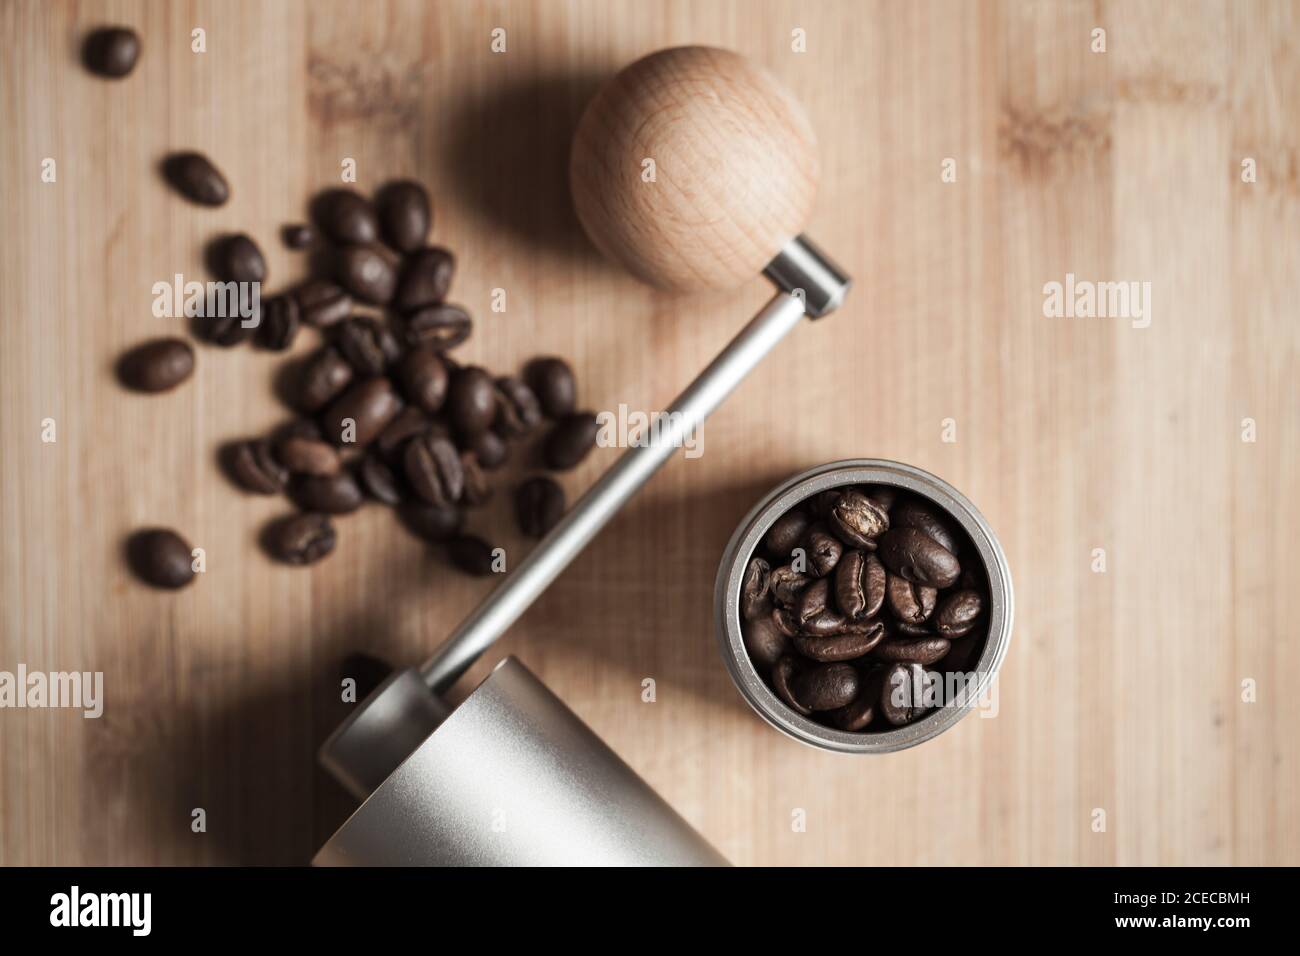 Manuelle Kaffeemühle und geröstete Kaffeebohnen sind auf Holztisch, flach Lay Foto mit weichem Fokus Stockfoto